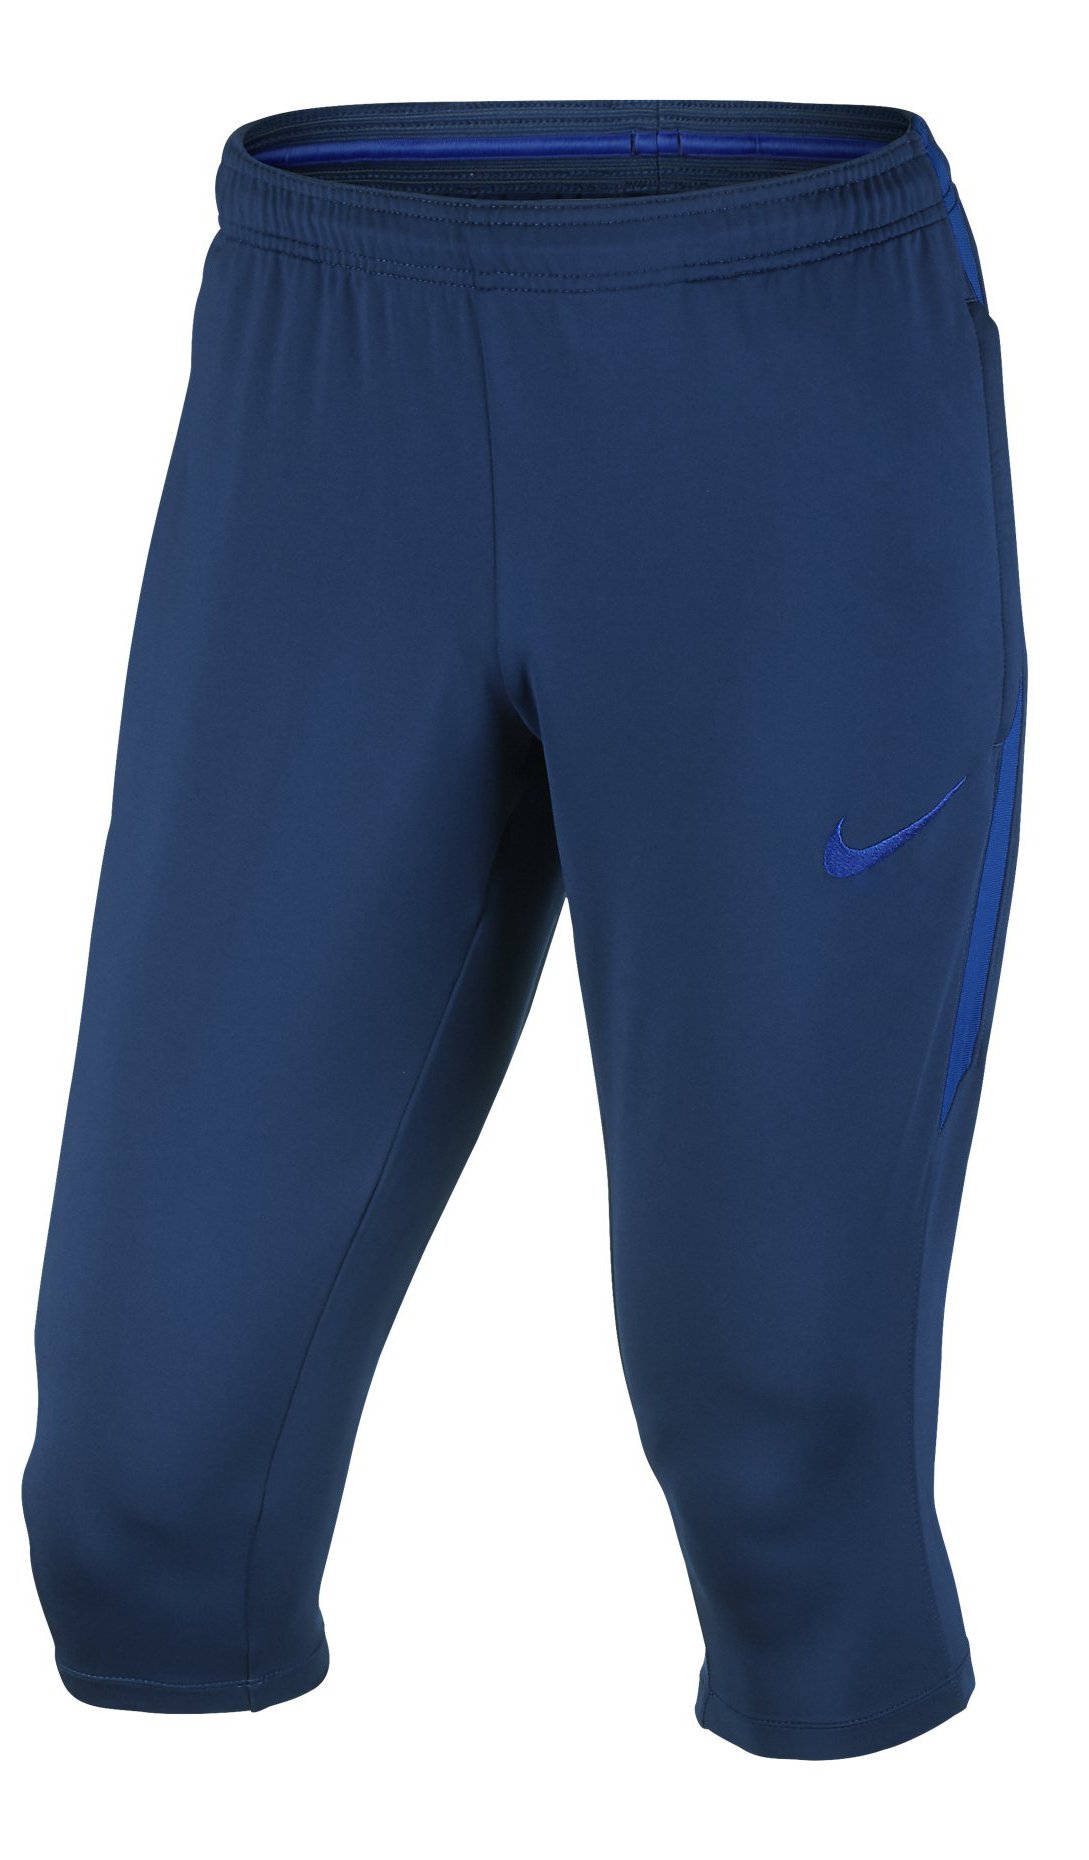 Fotbalové tříčtvrteční kalhoty Nike Dry Squad